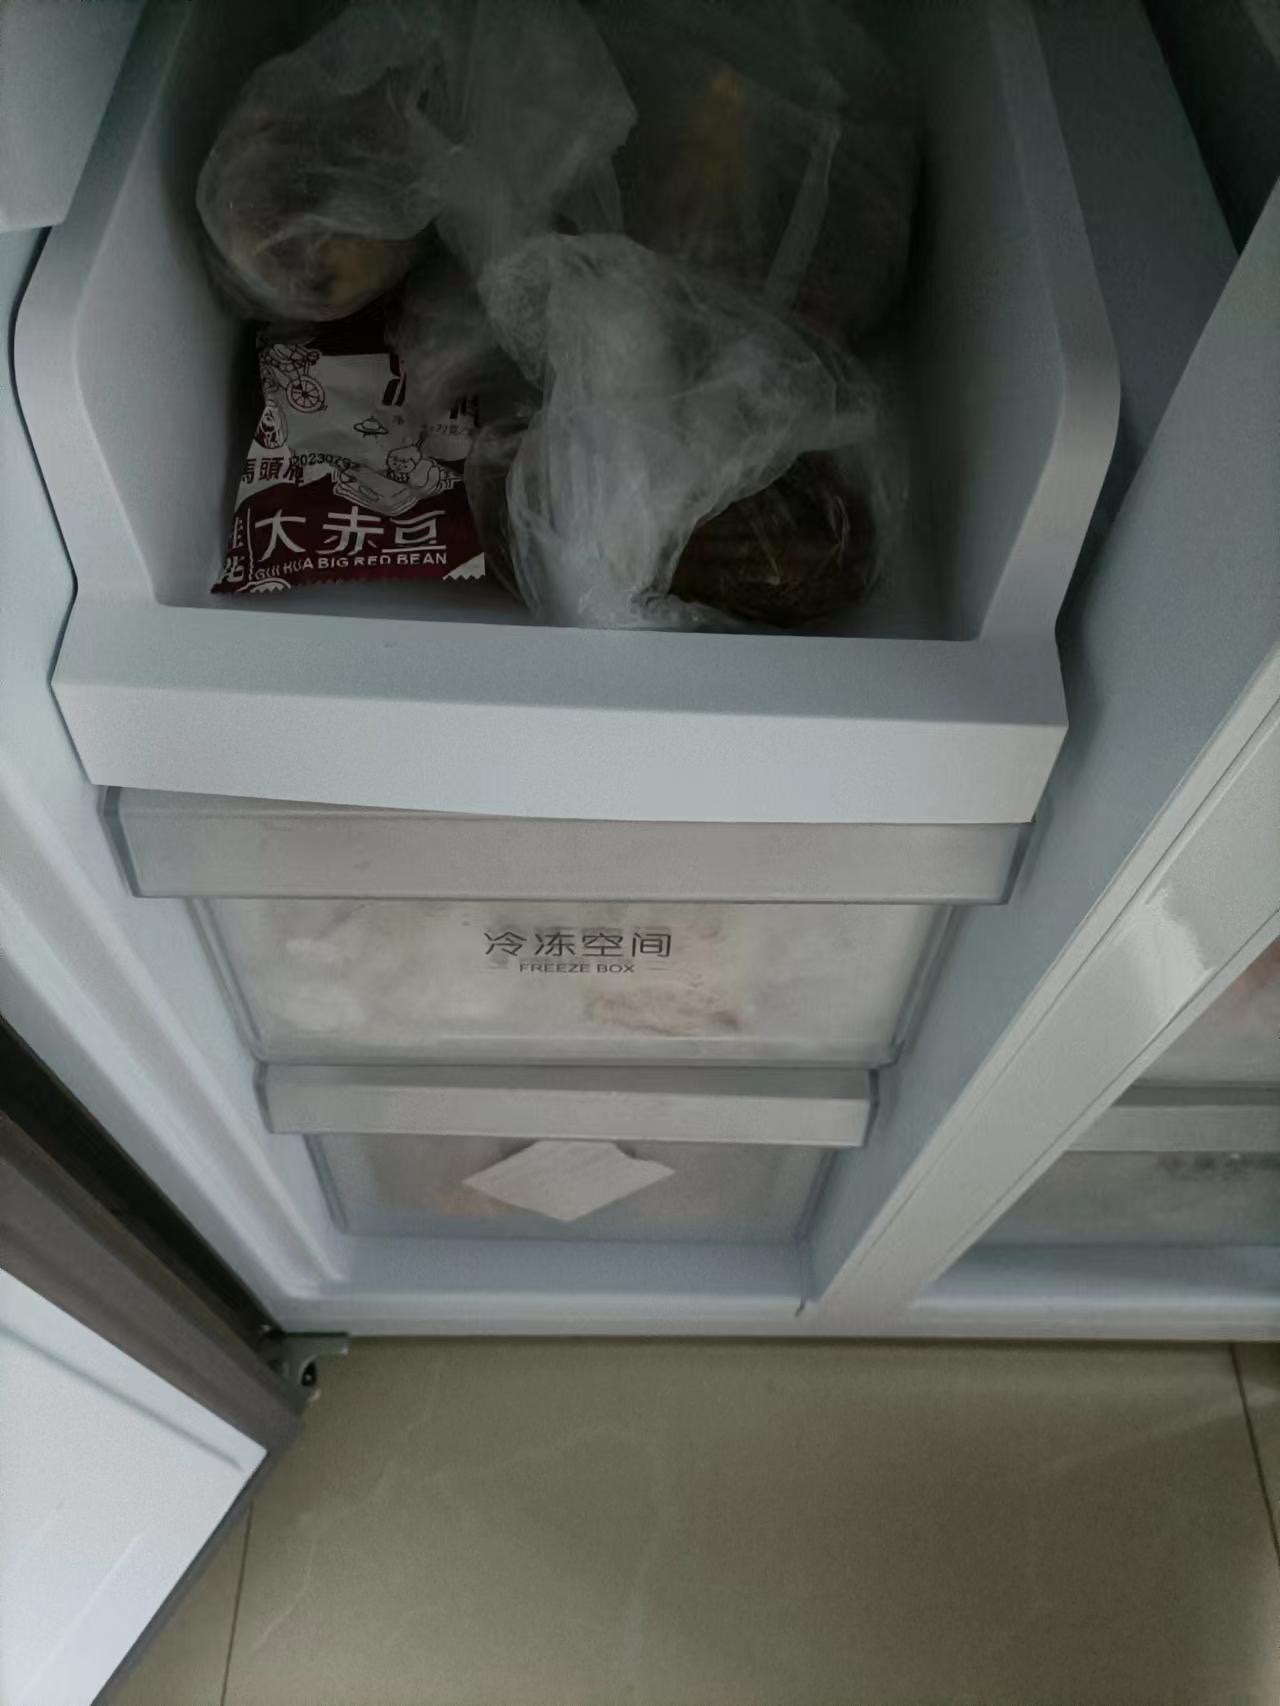 海尔(Haier)406升十字对开门超薄嵌入冰箱 彩晶面板 DEO净味养鲜 家用 BCD-406WLHTDEDSLU1晒单图